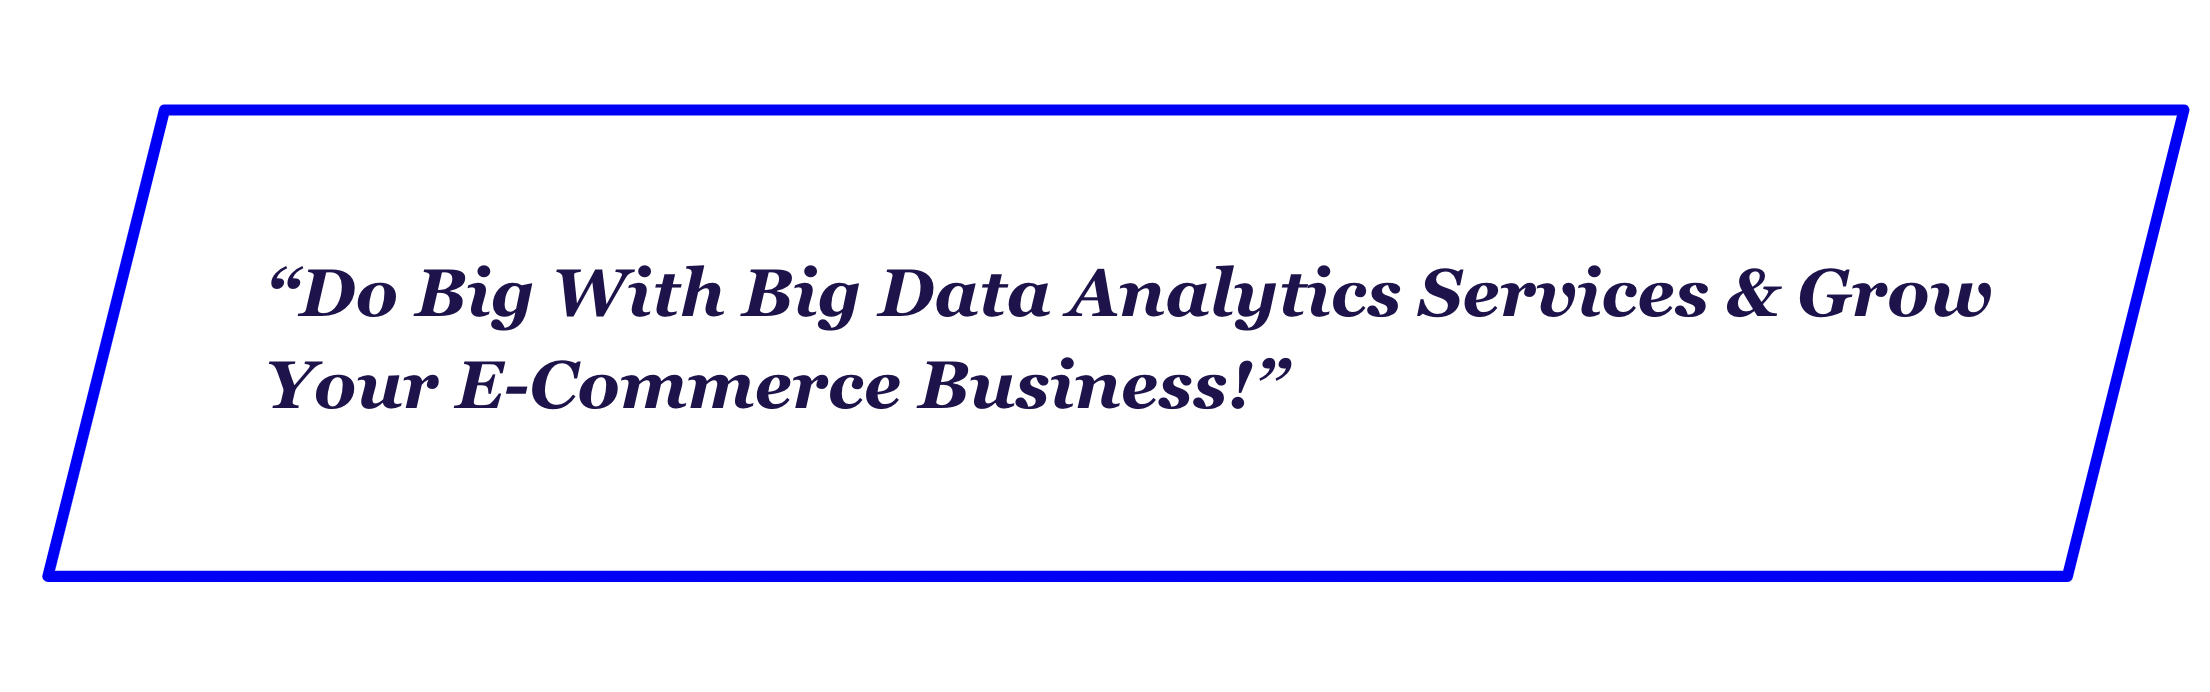 Big Data analytics services